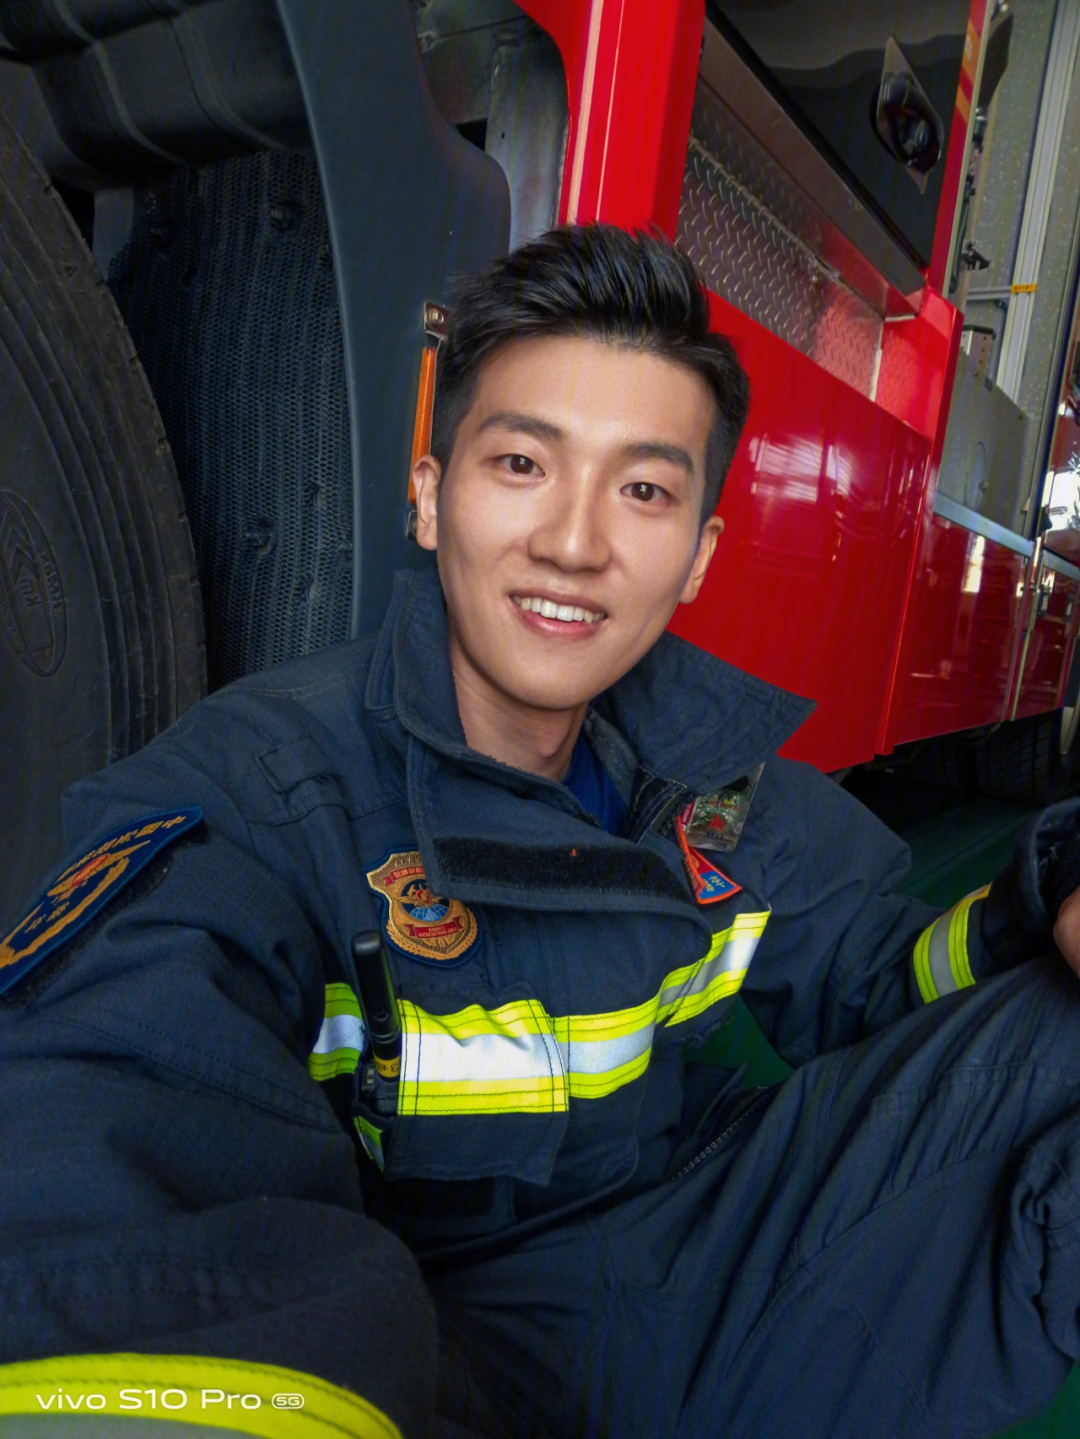 中国消防员照片超帅图片